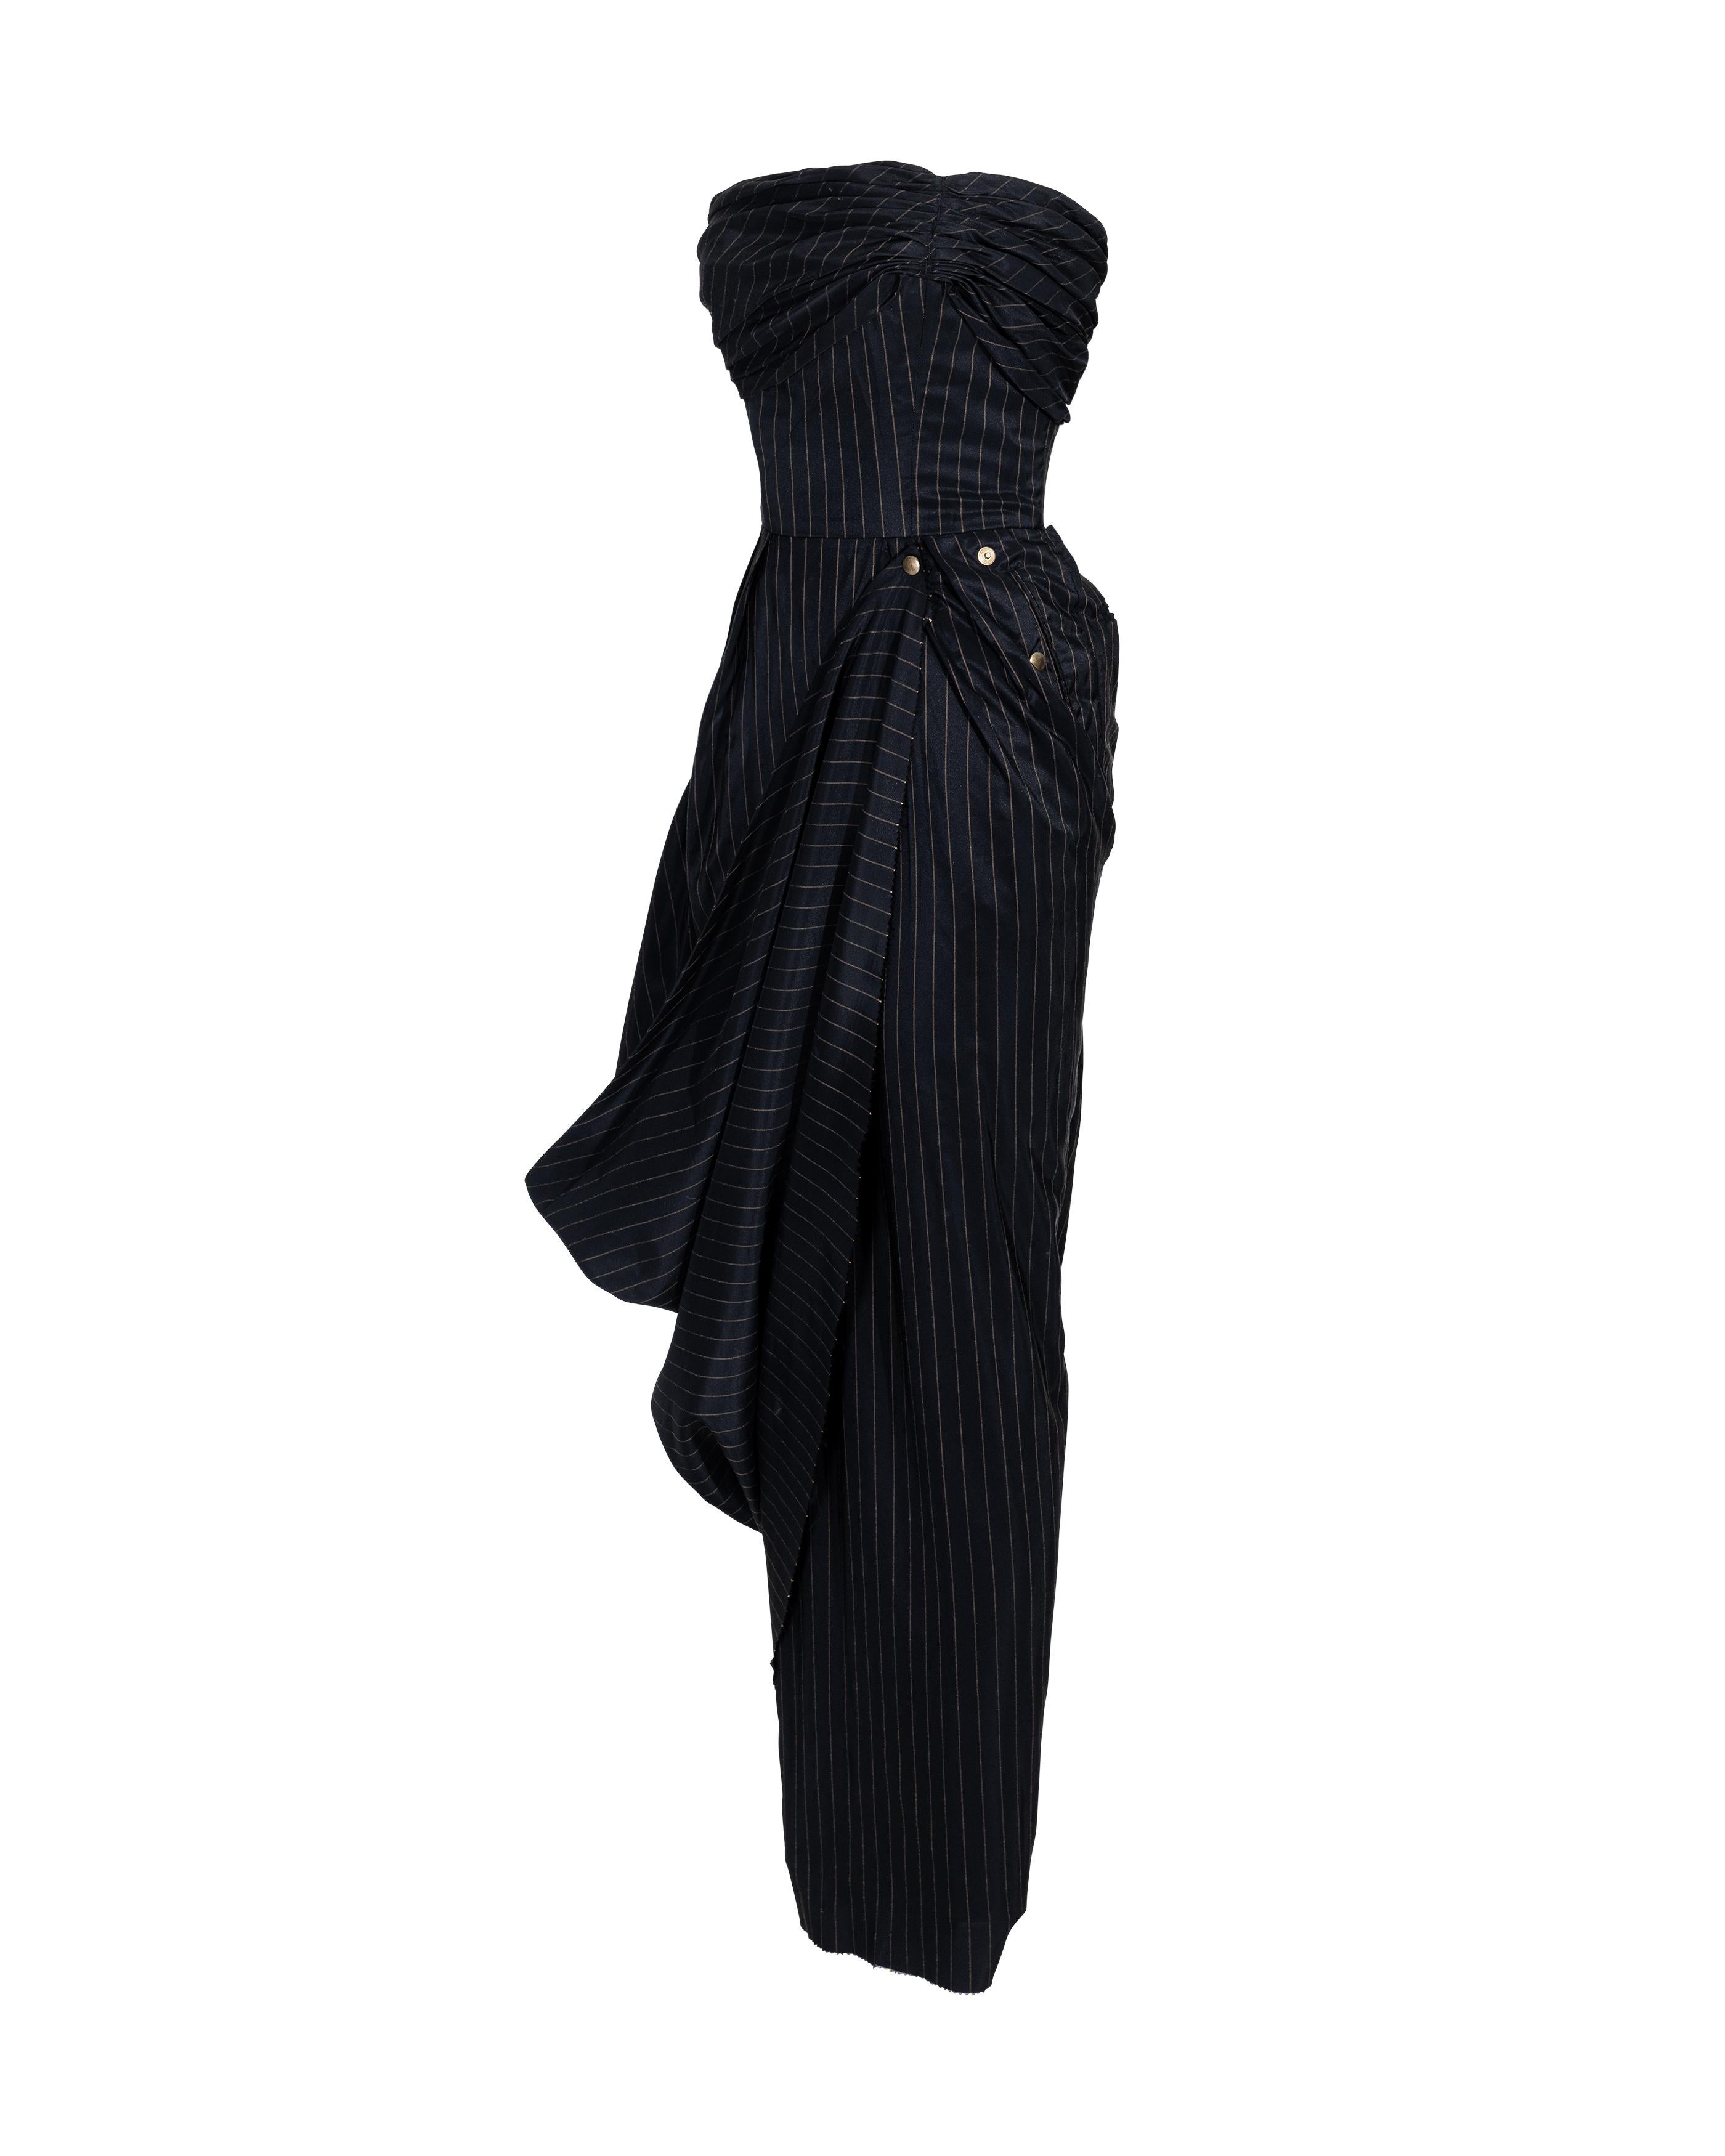 S/S 1995 Jean Paul Gaultier Pinstripe Strapless Bustle Gown 6